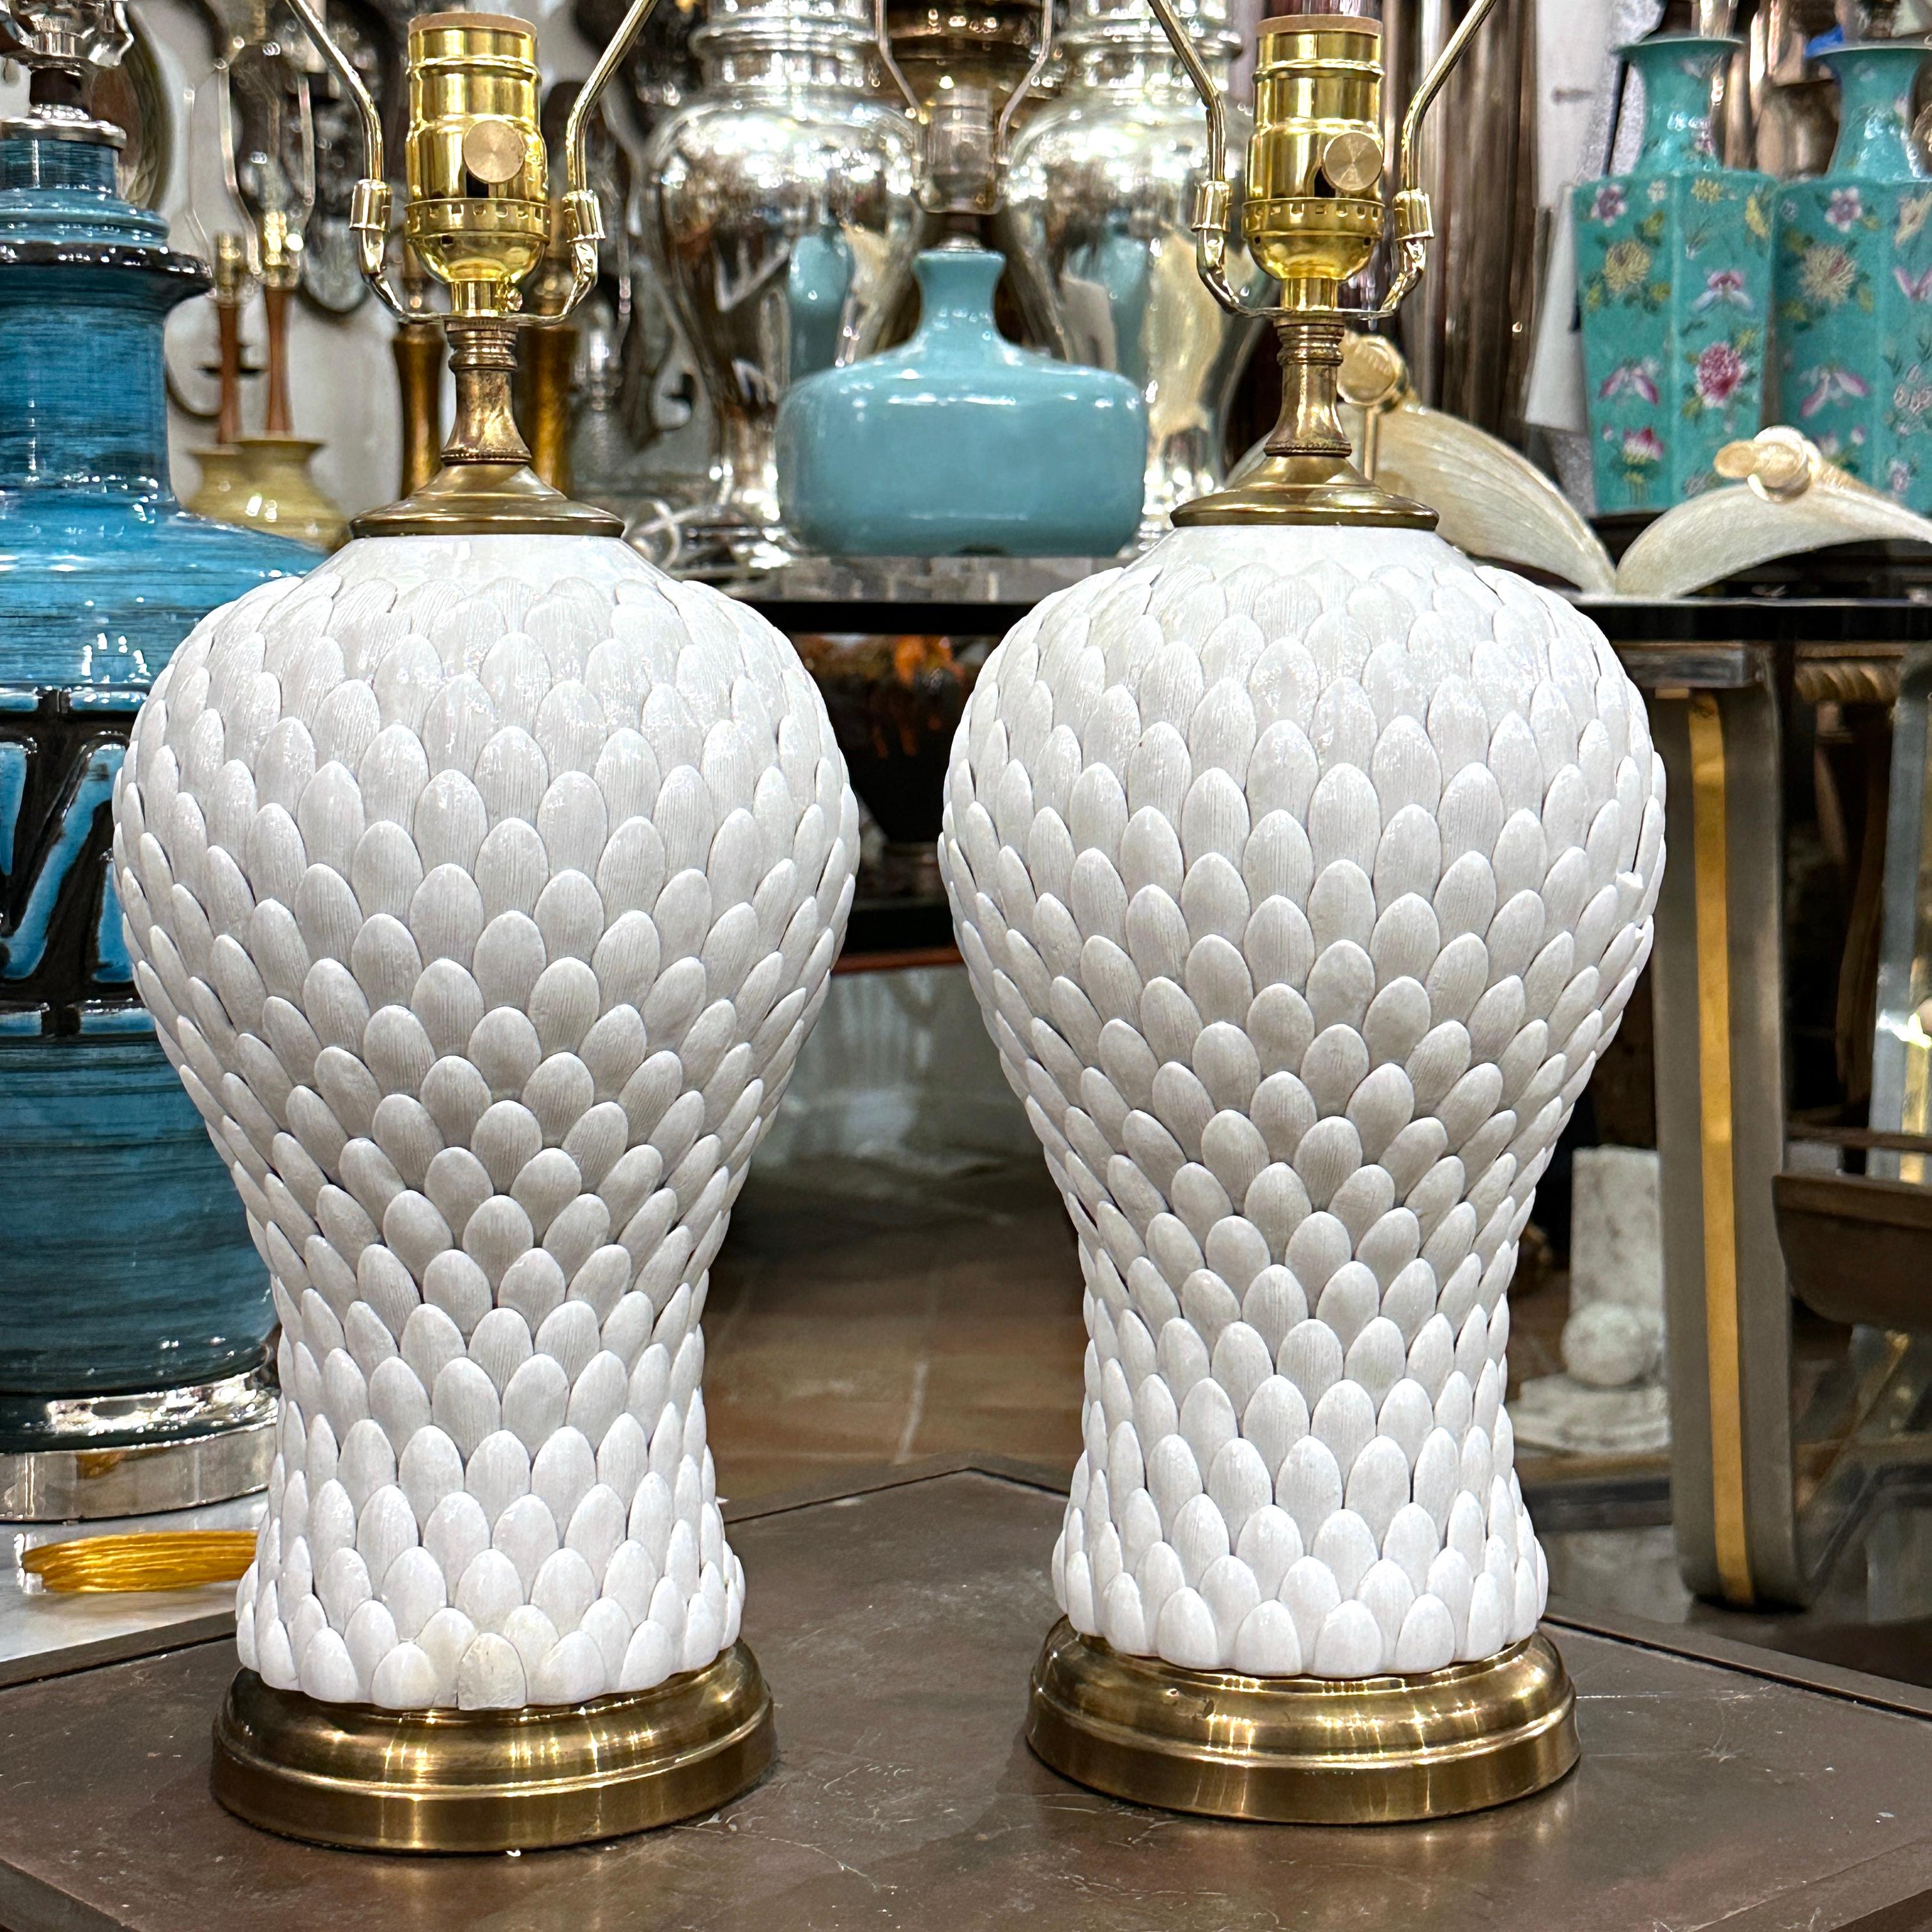 Paire de lampes de table en porcelaine française des années 1940.

Mesures :
Hauteur du corps : 14
Hauteur jusqu'à l'appui de l'abat-jour : 23